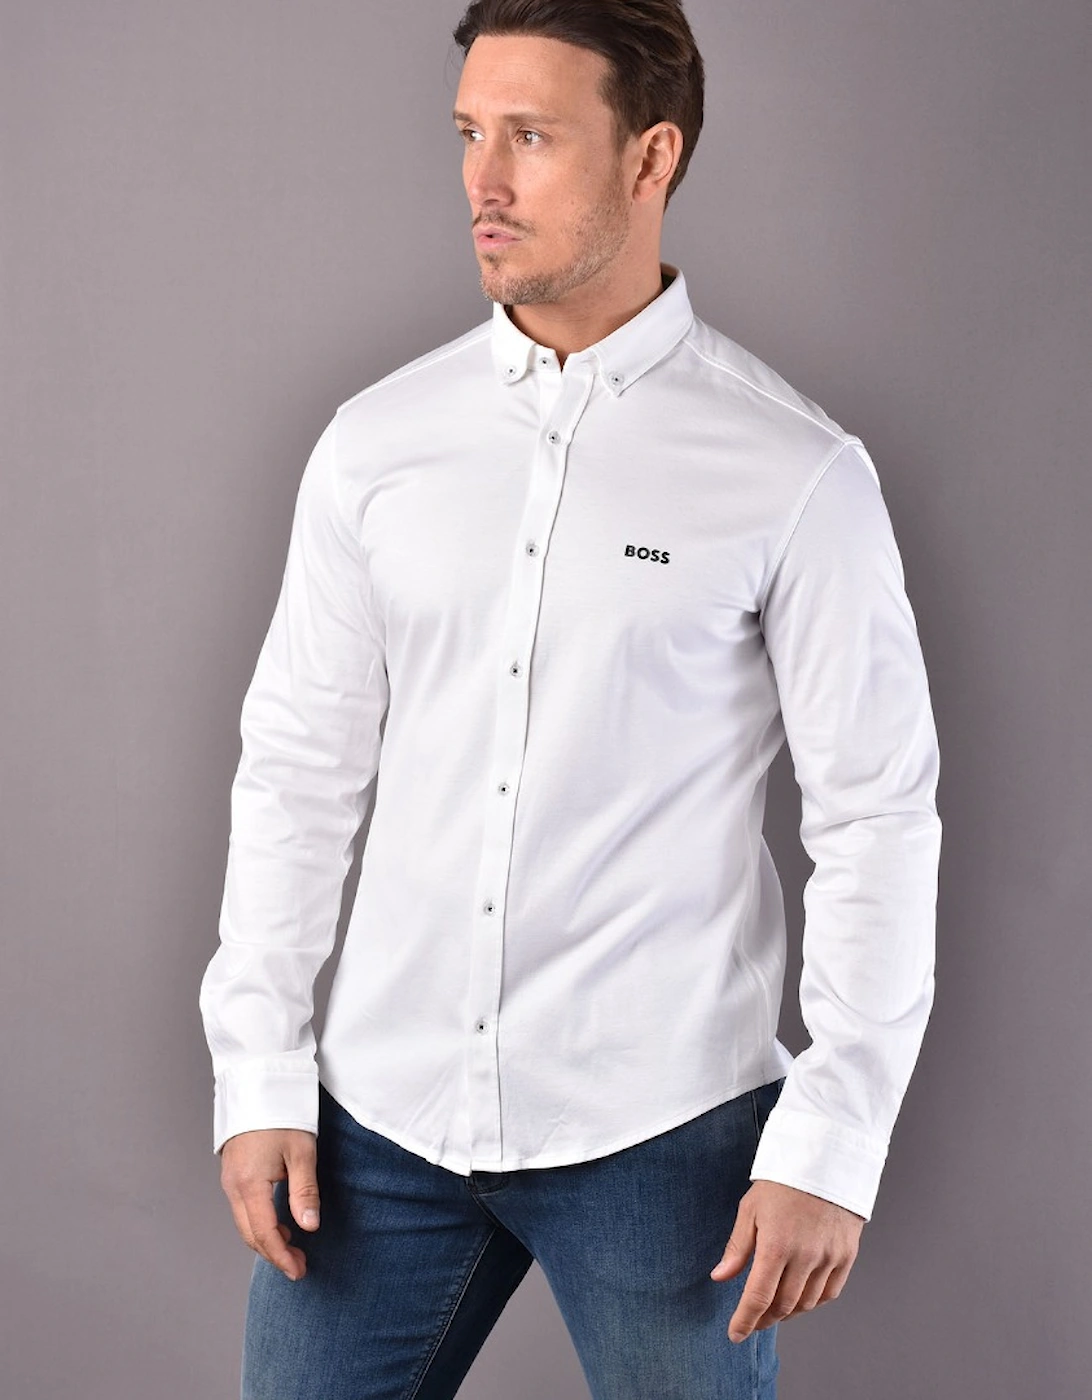 BIADO_R Shirt White